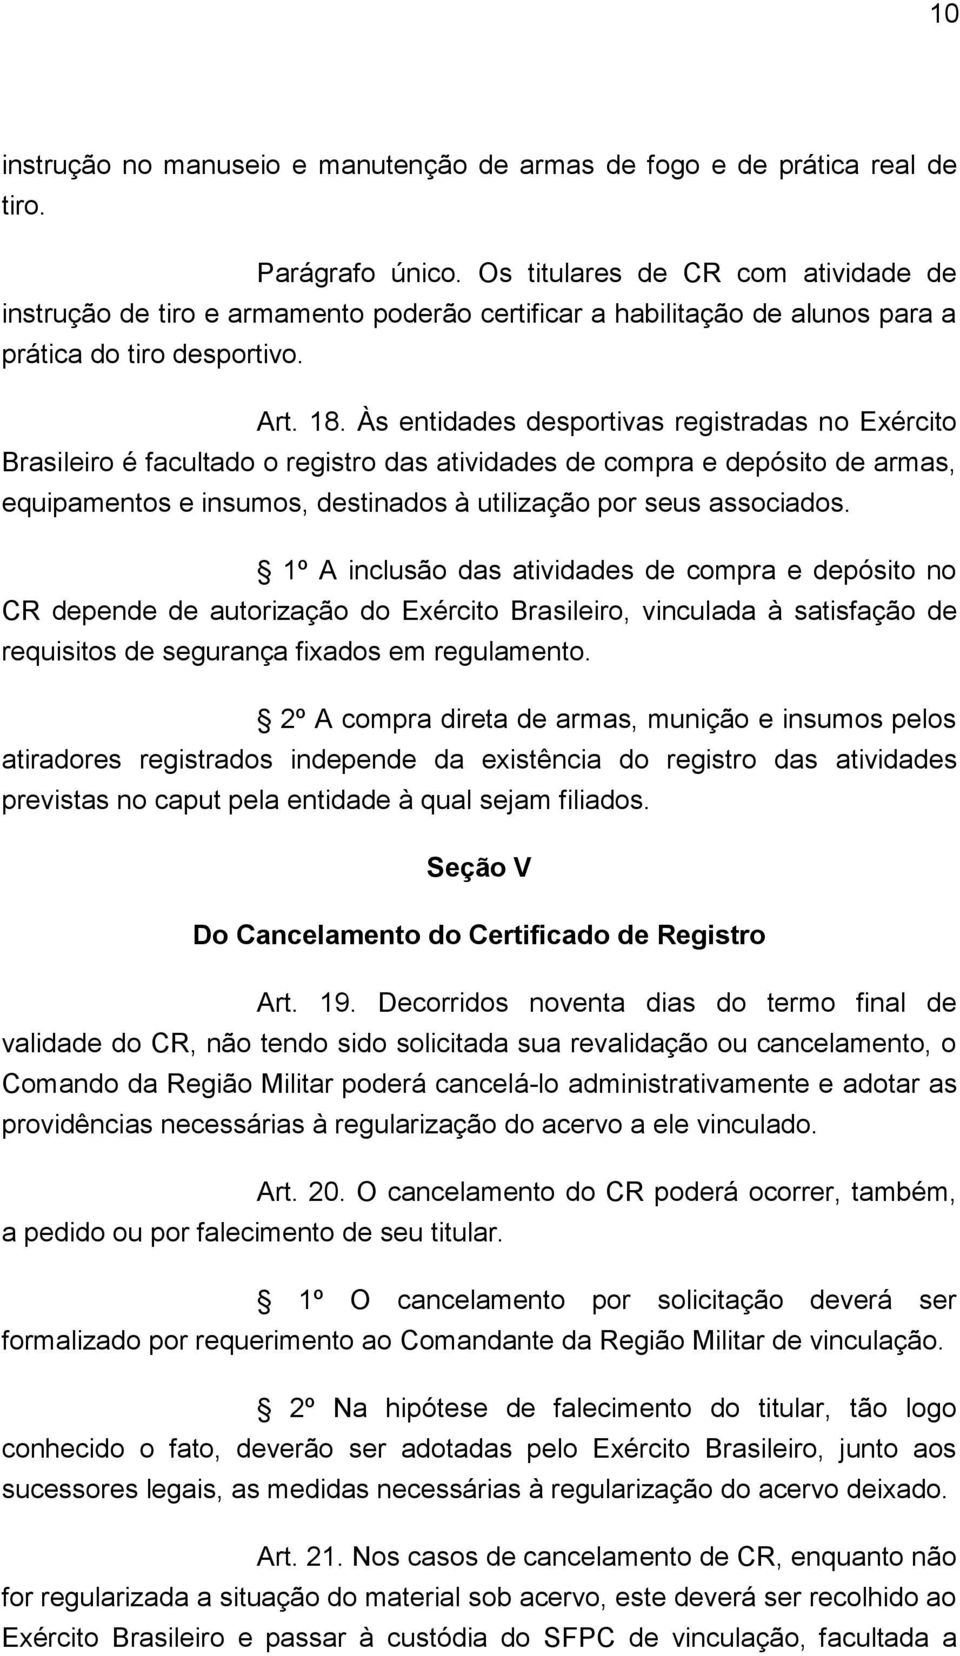 Às entidades desportivas registradas no Exército Brasileiro é facultado o registro das atividades de compra e depósito de armas, equipamentos e insumos, destinados à utilização por seus associados.